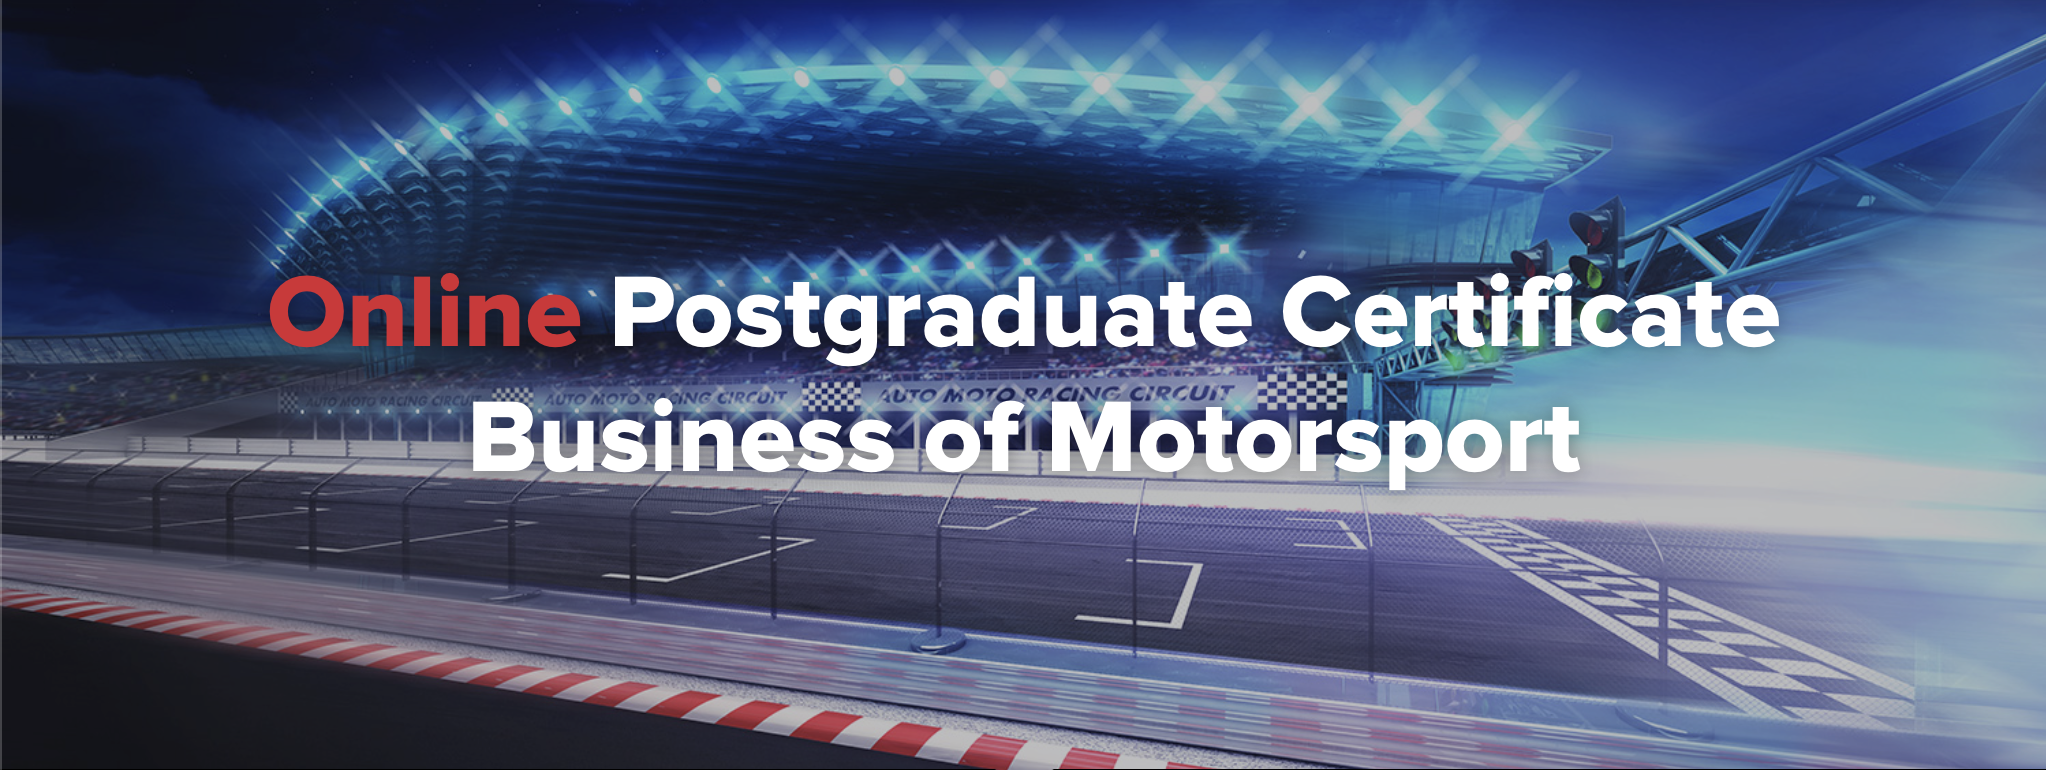 Online Postgraduate Certificate Business of Motorsport